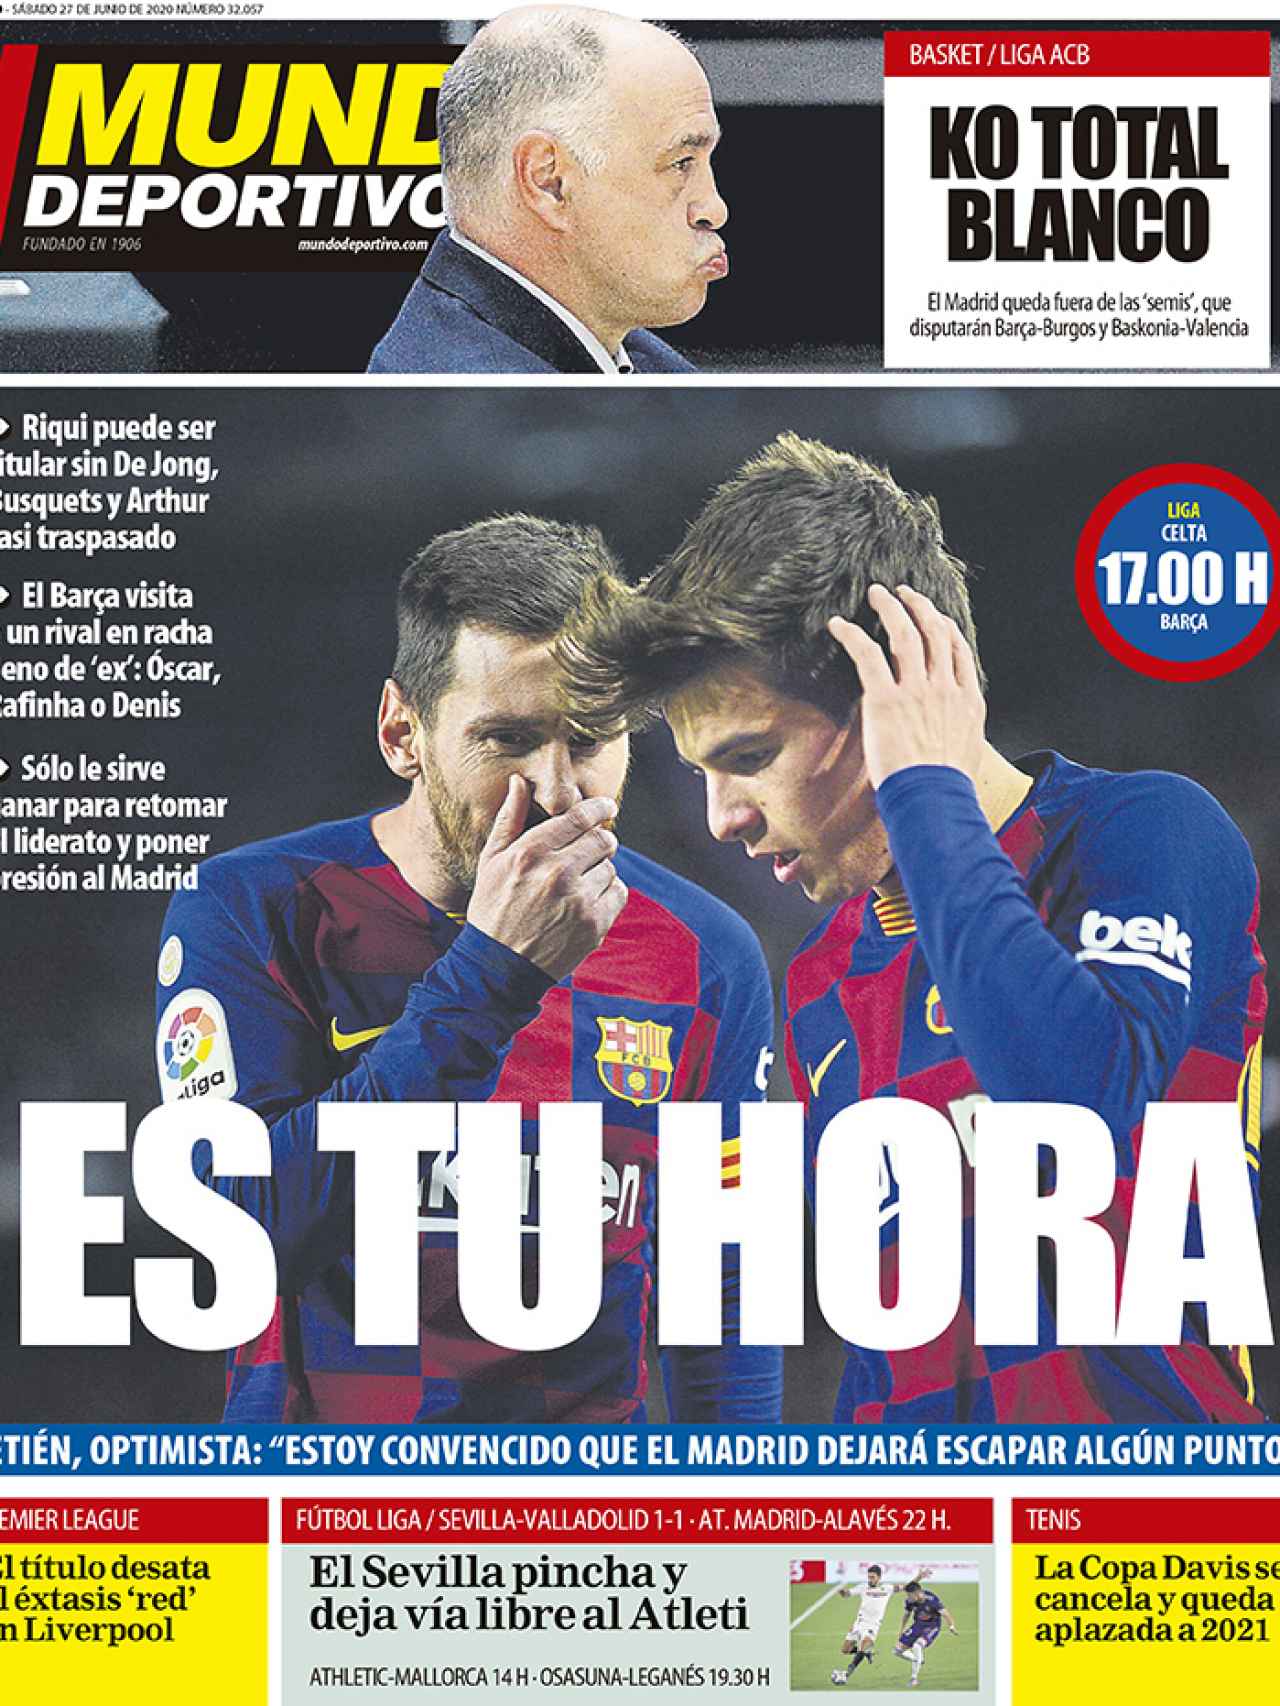 La portada del diario Mundo Deportivo (27/06/2020)